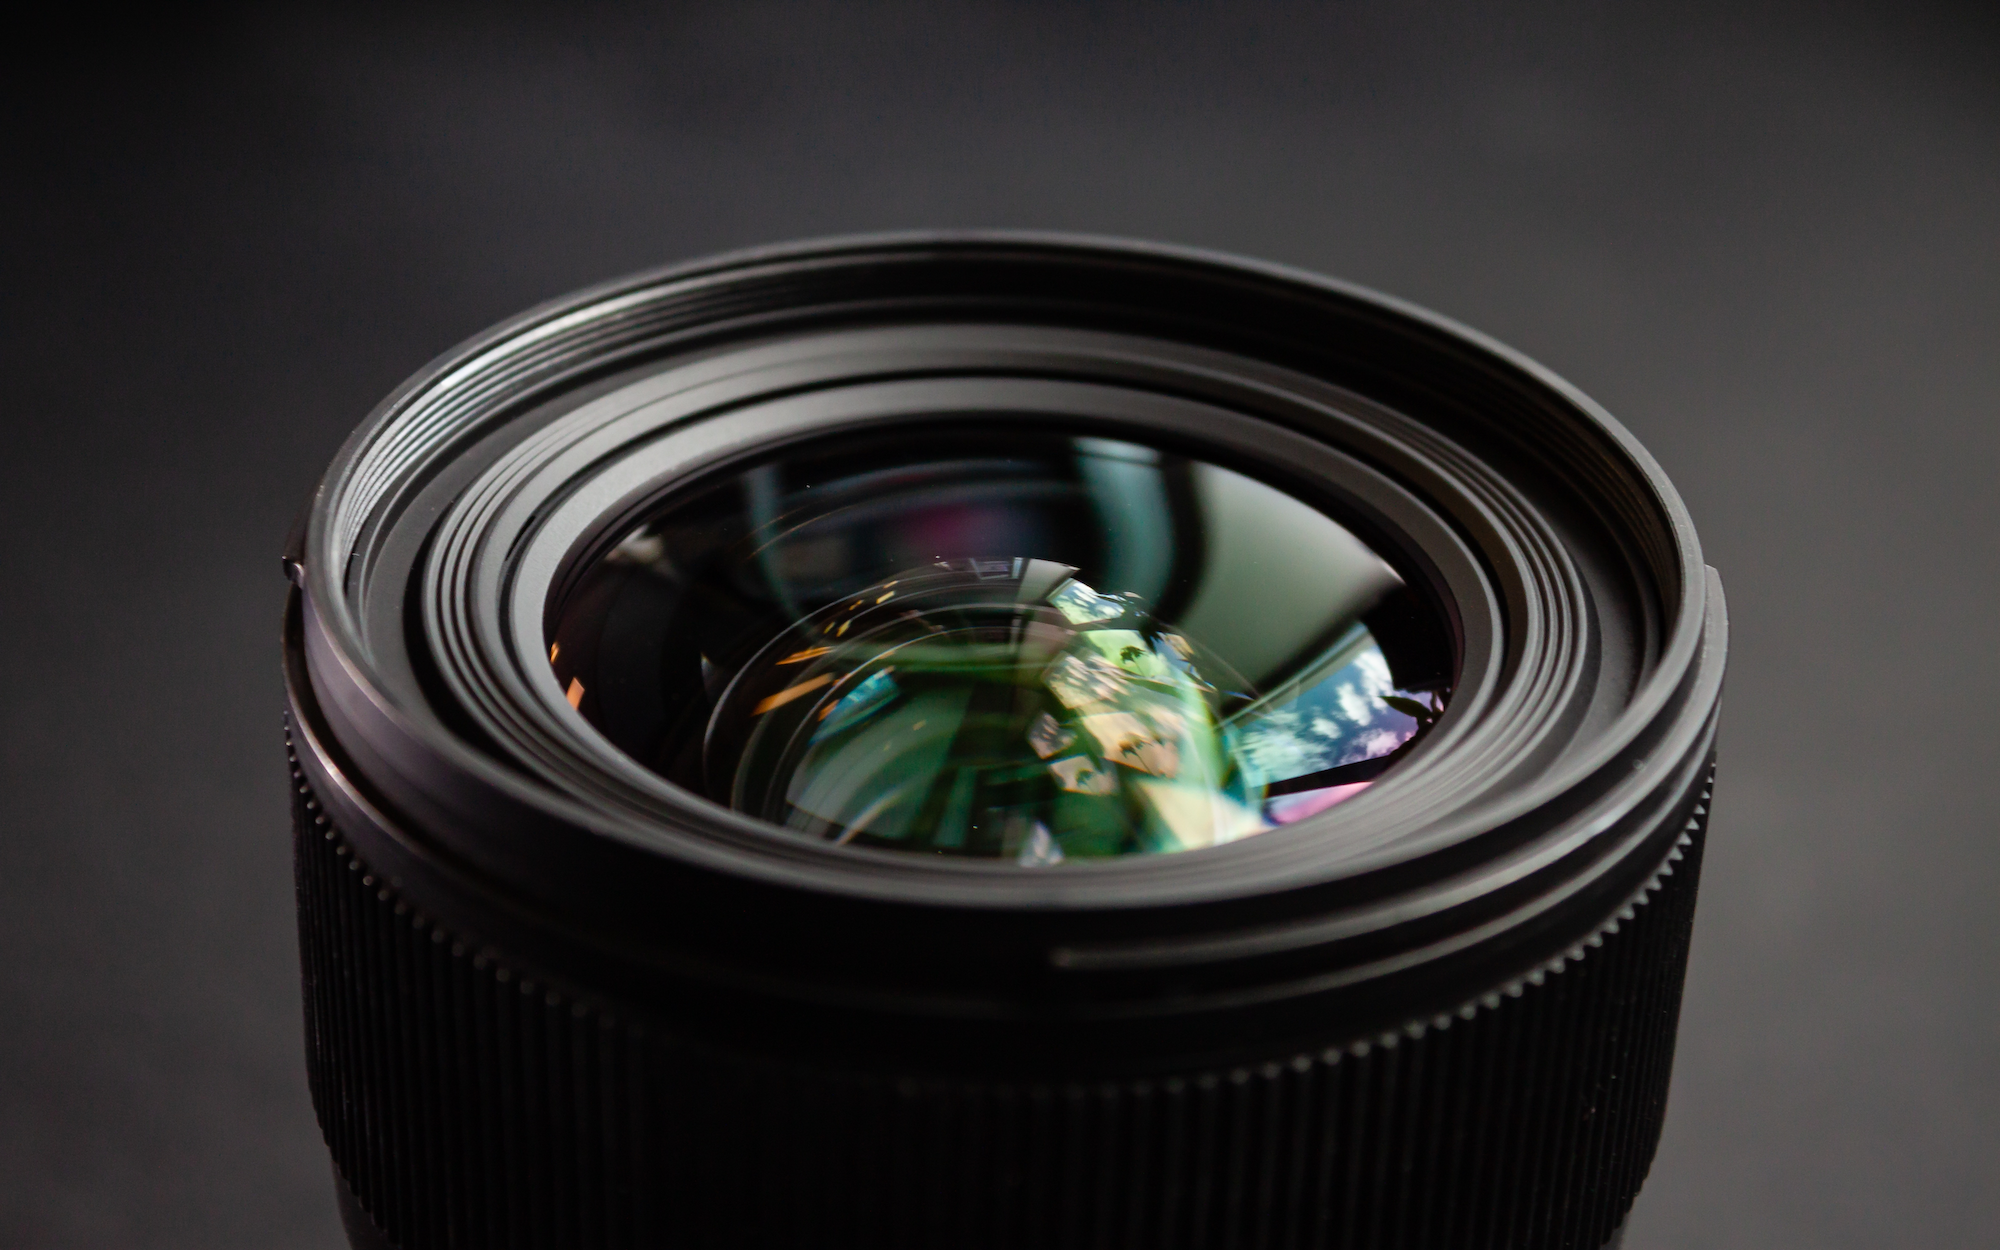 How to Choose a Camera Lens